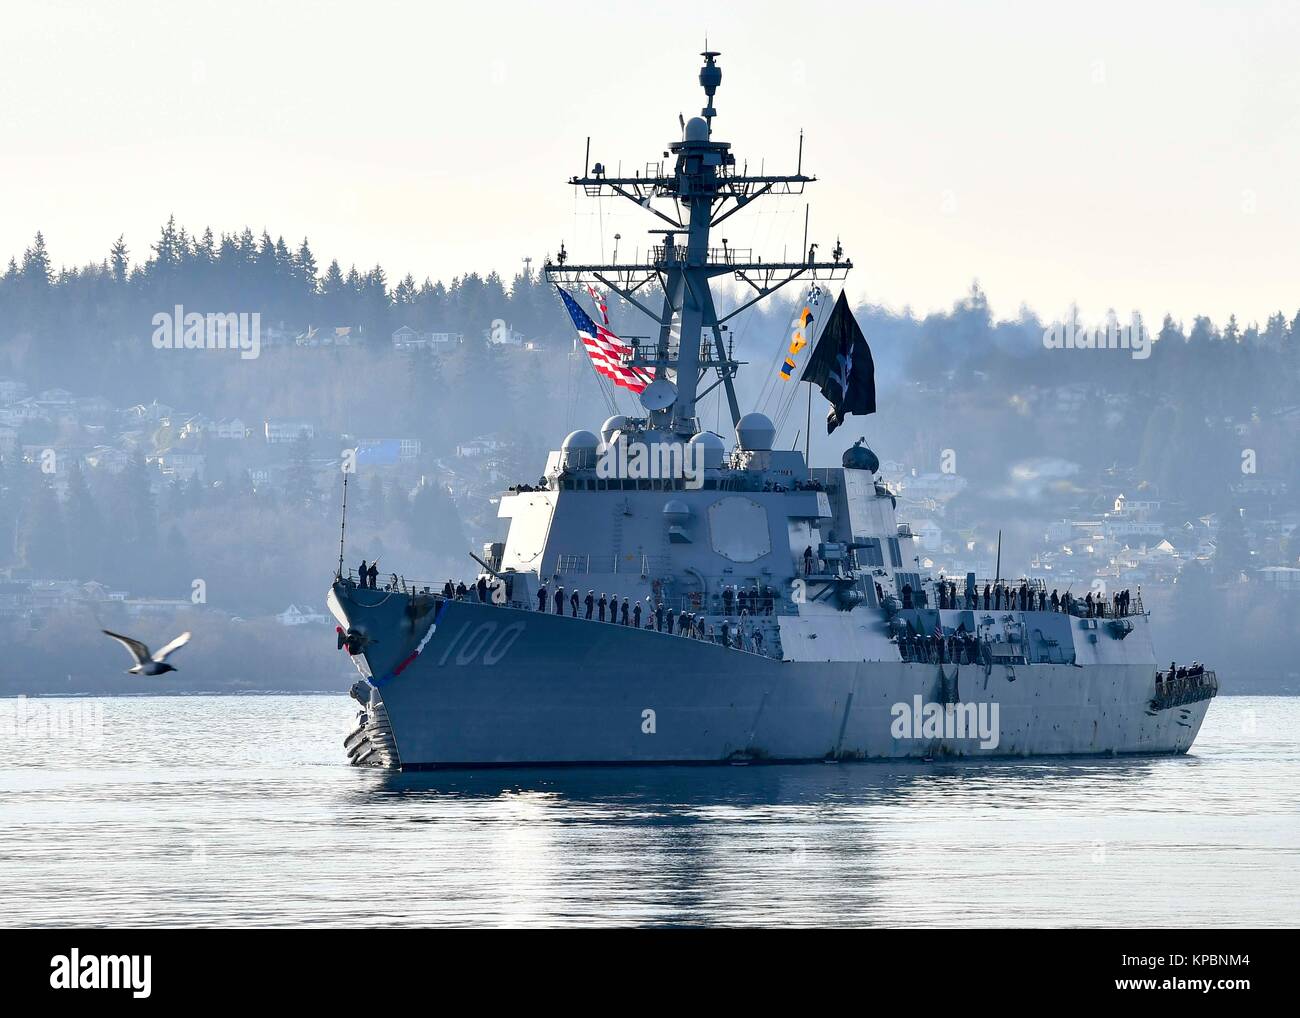 La Marina de los Estados Unidos de clase Arleigh Burke de misiles guiados destructor USS Kidd regresa a casa a la Estación Naval Everett Diciembre 10, 2017 en Everett, Washington. Foto de stock